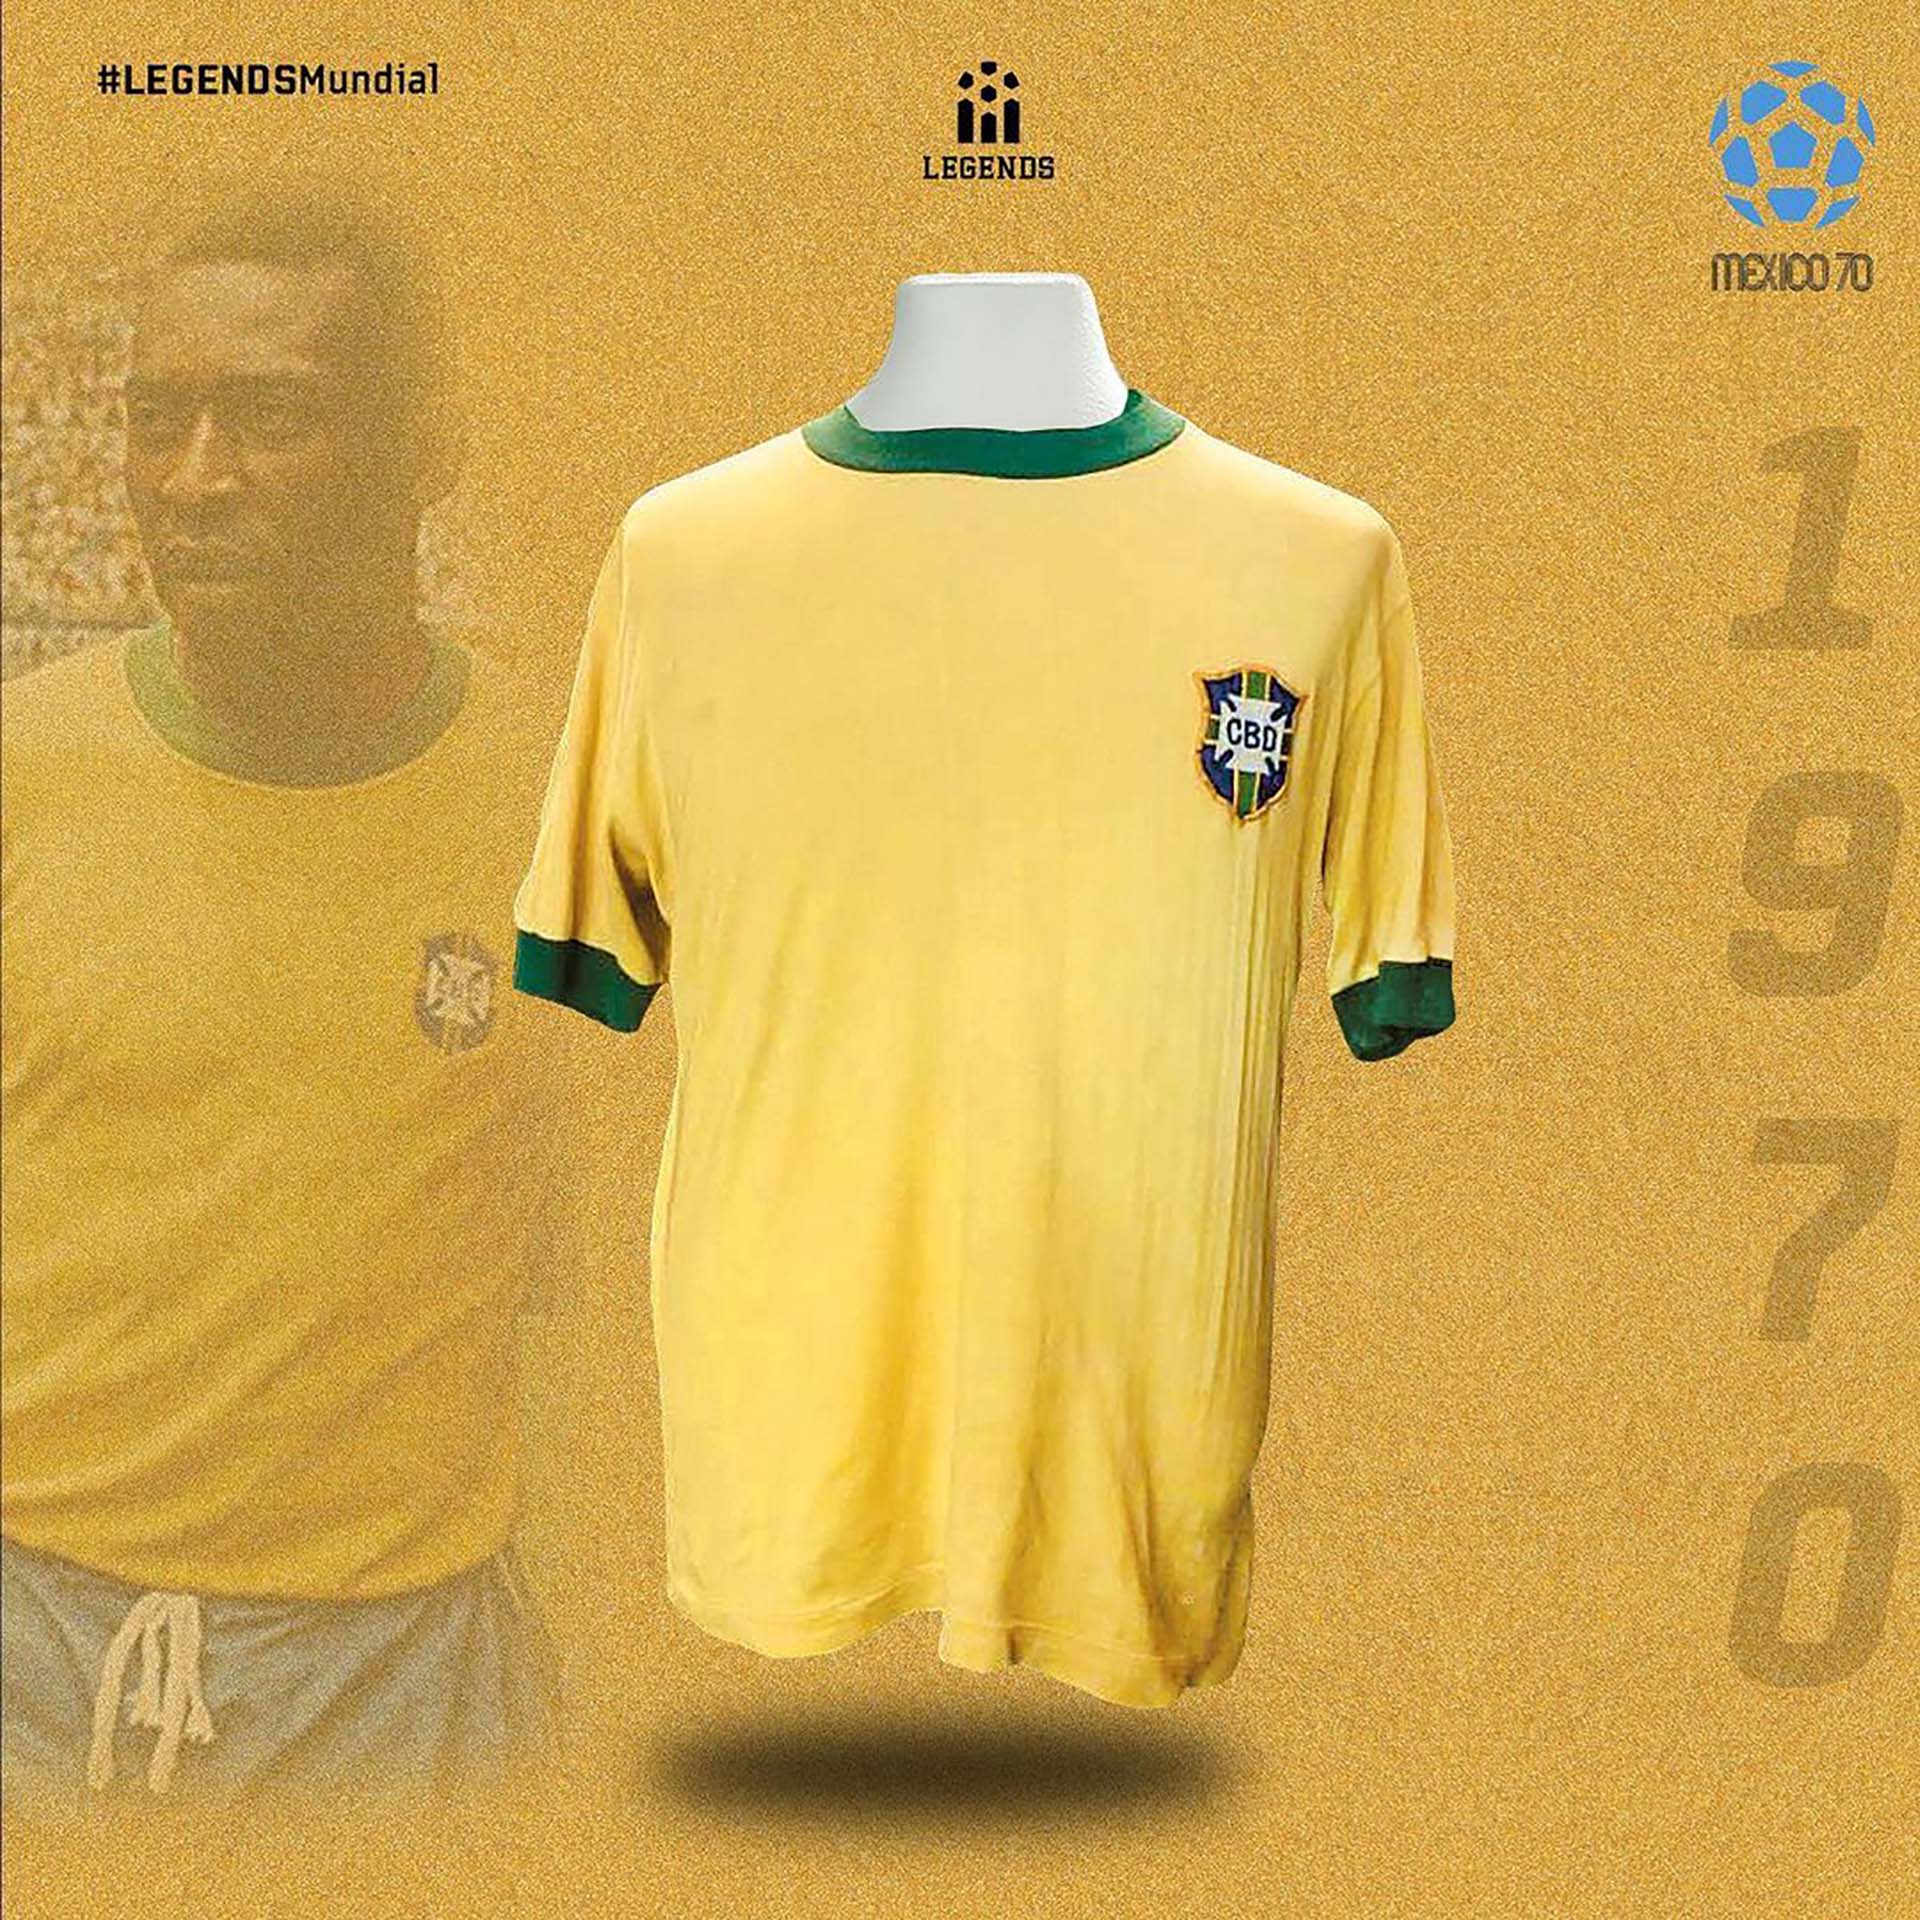 Una de Brasil usada por Pelé en el Mundial de México 70